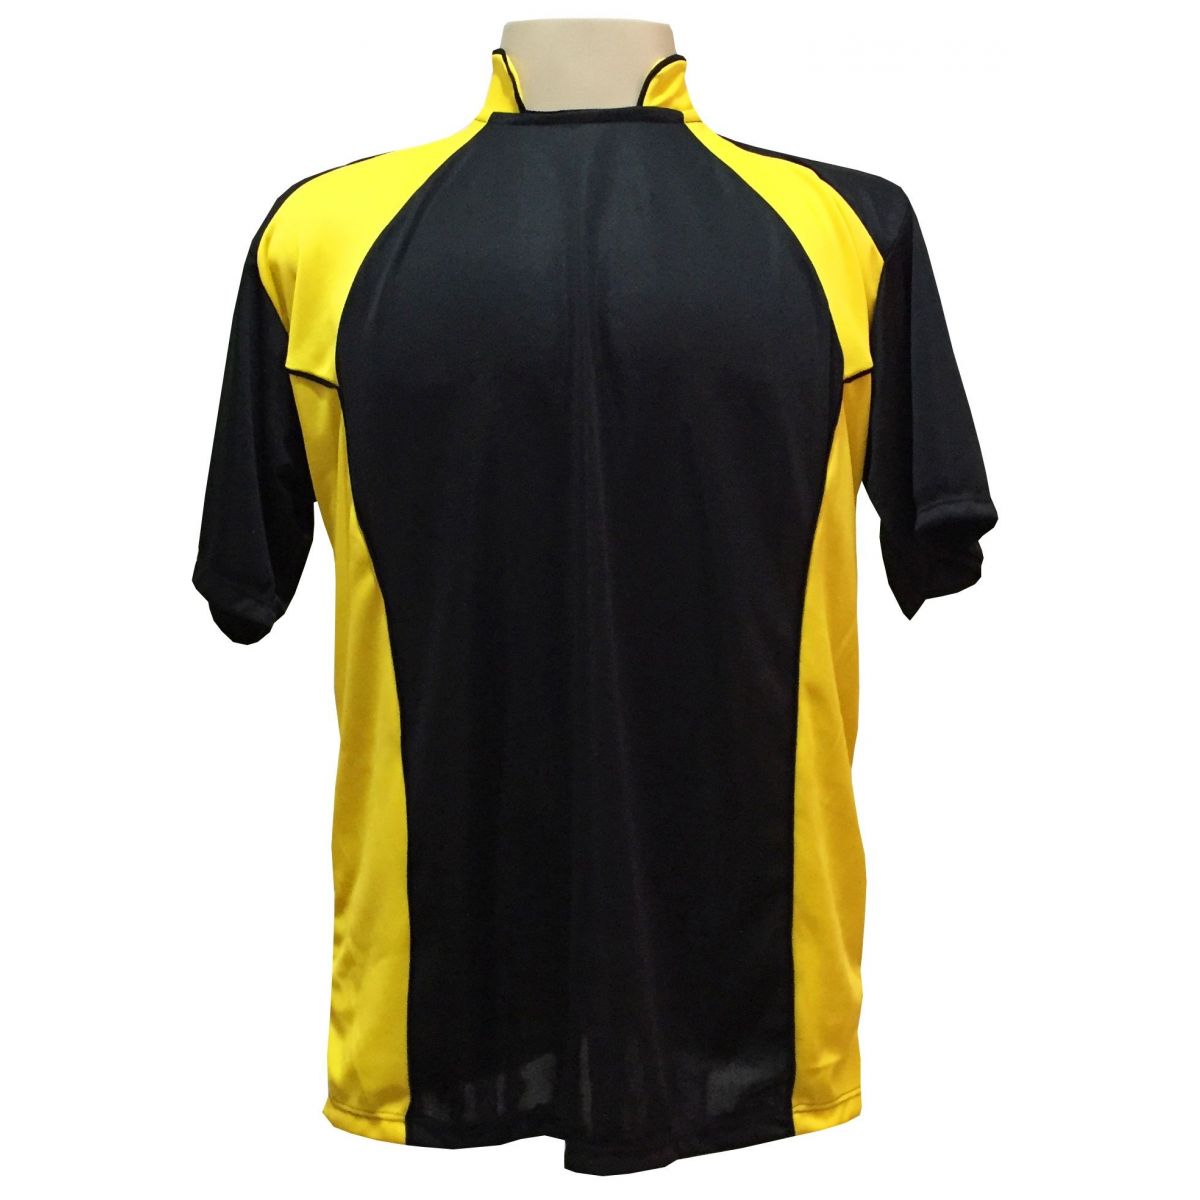 Uniforme Esportivo Completo modelo Suécia 14+1 (14 camisas Preto/Amarelo + 14 calções Madrid Amarelo + 14 pares de meiões Pretos + 1 conjunto de goleiro) + Brindes